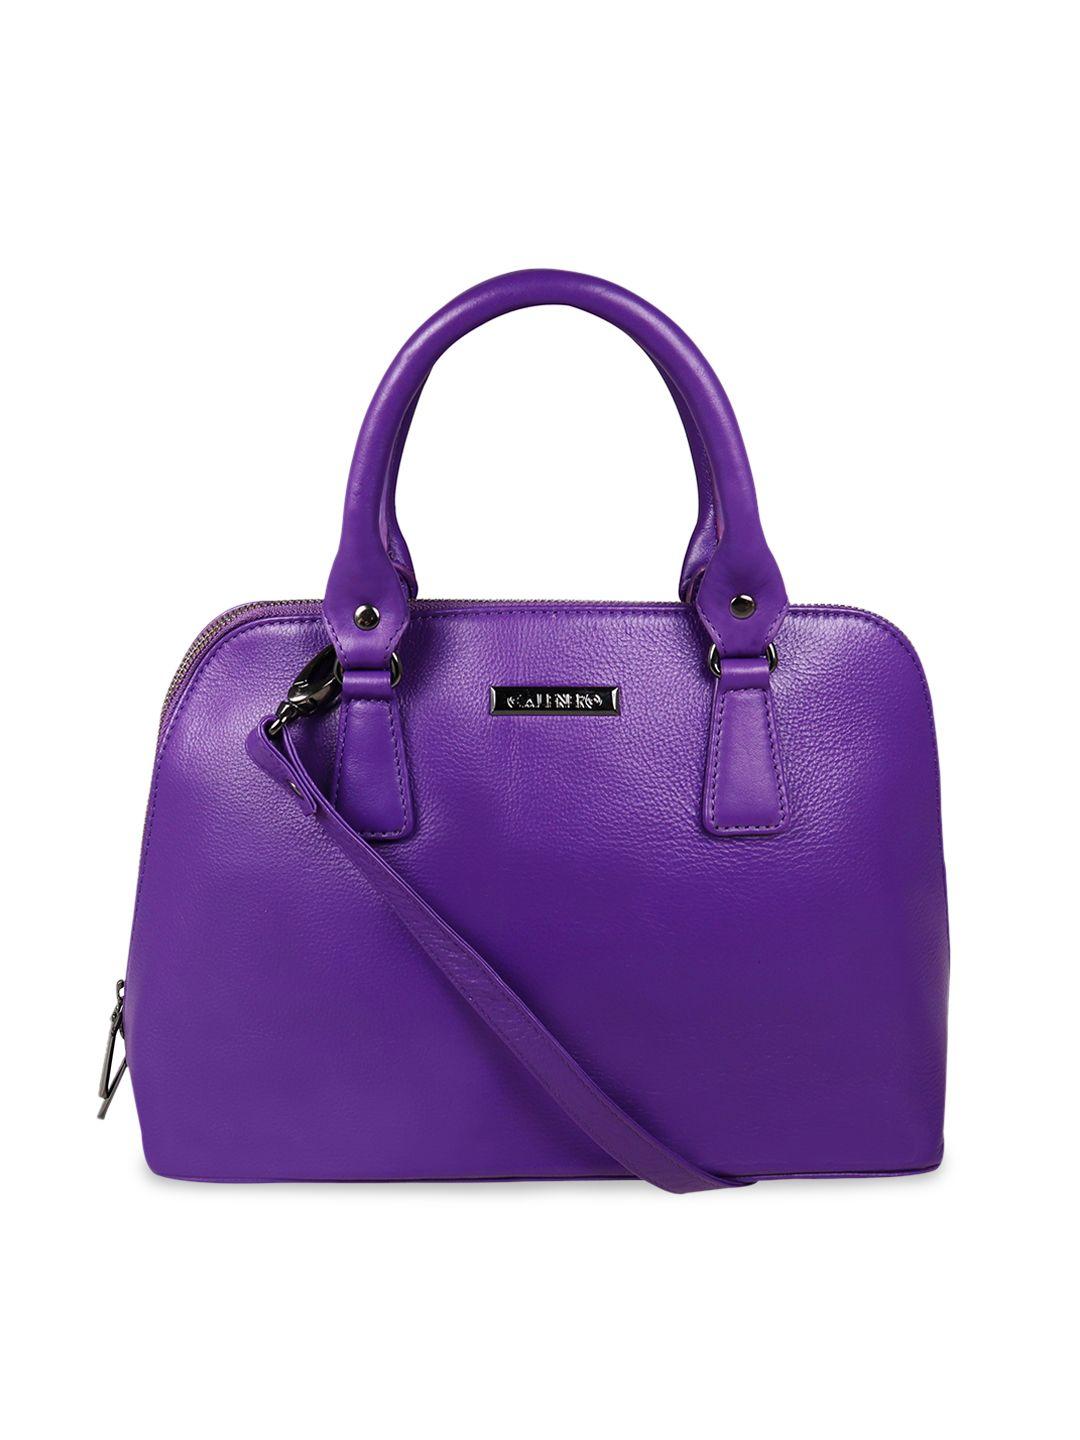 calfnero violet leather structured handheld bag